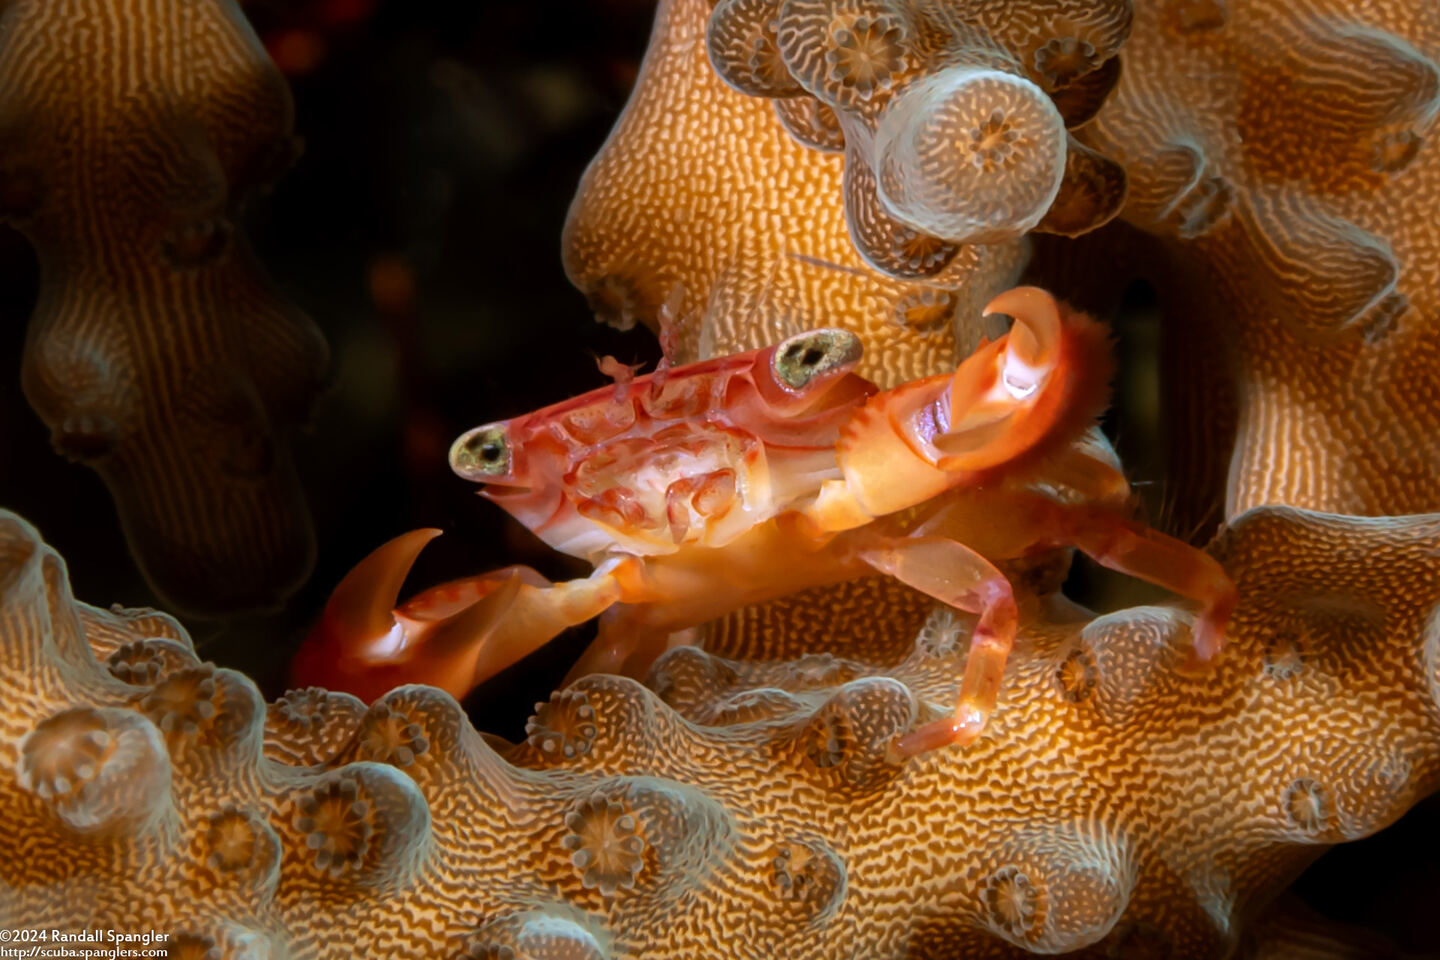 Trapezia serenei (Serene's Guard Crab)